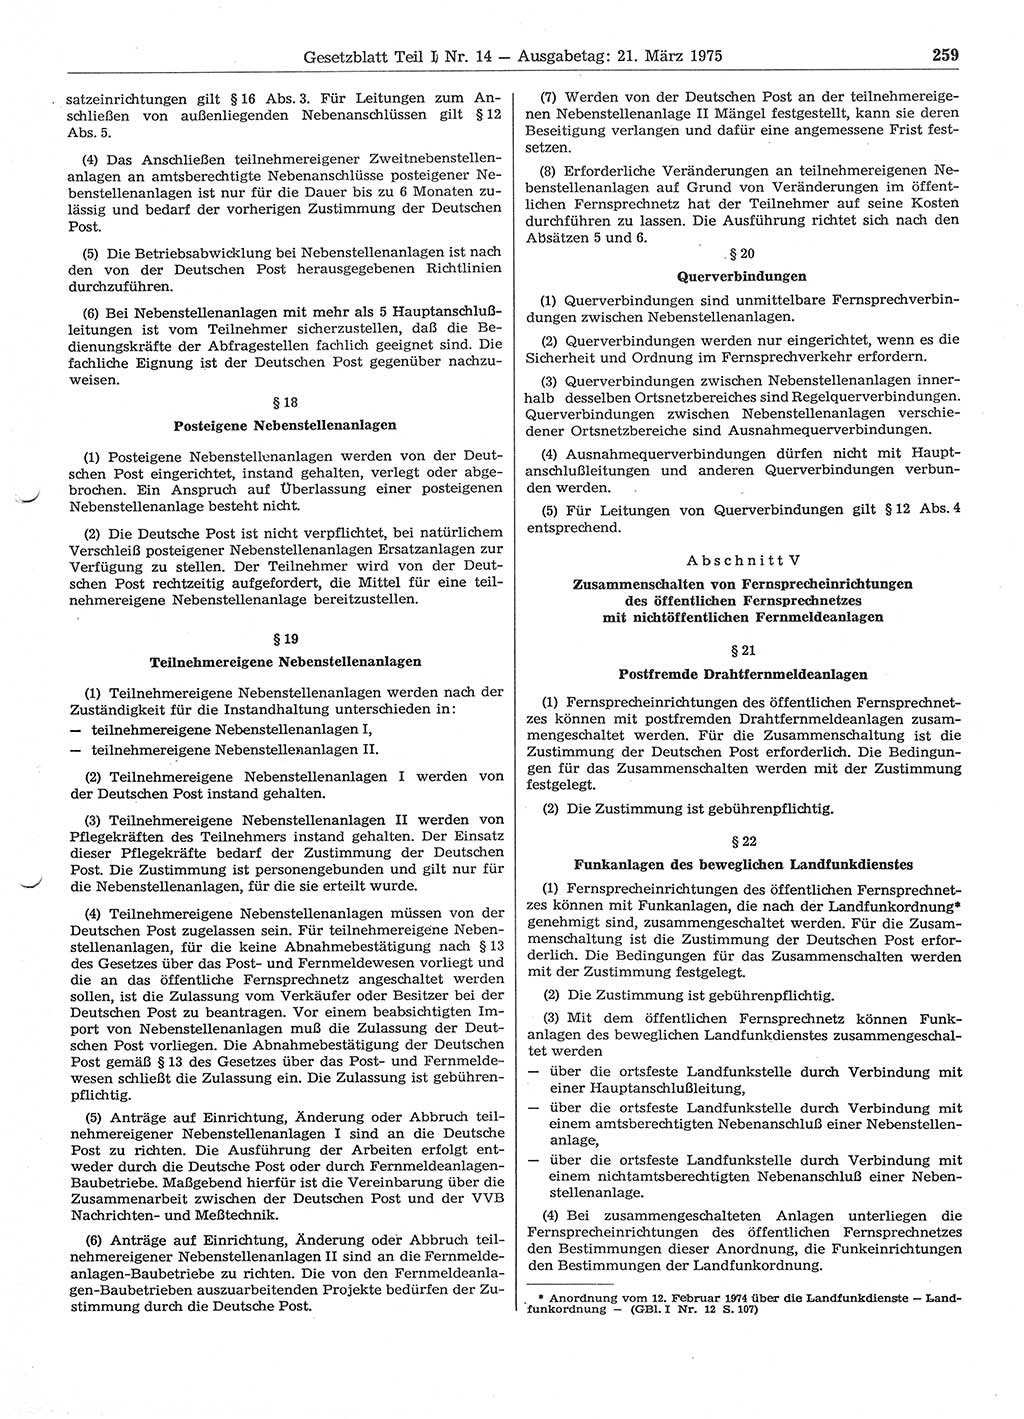 Gesetzblatt (GBl.) der Deutschen Demokratischen Republik (DDR) Teil Ⅰ 1975, Seite 259 (GBl. DDR Ⅰ 1975, S. 259)